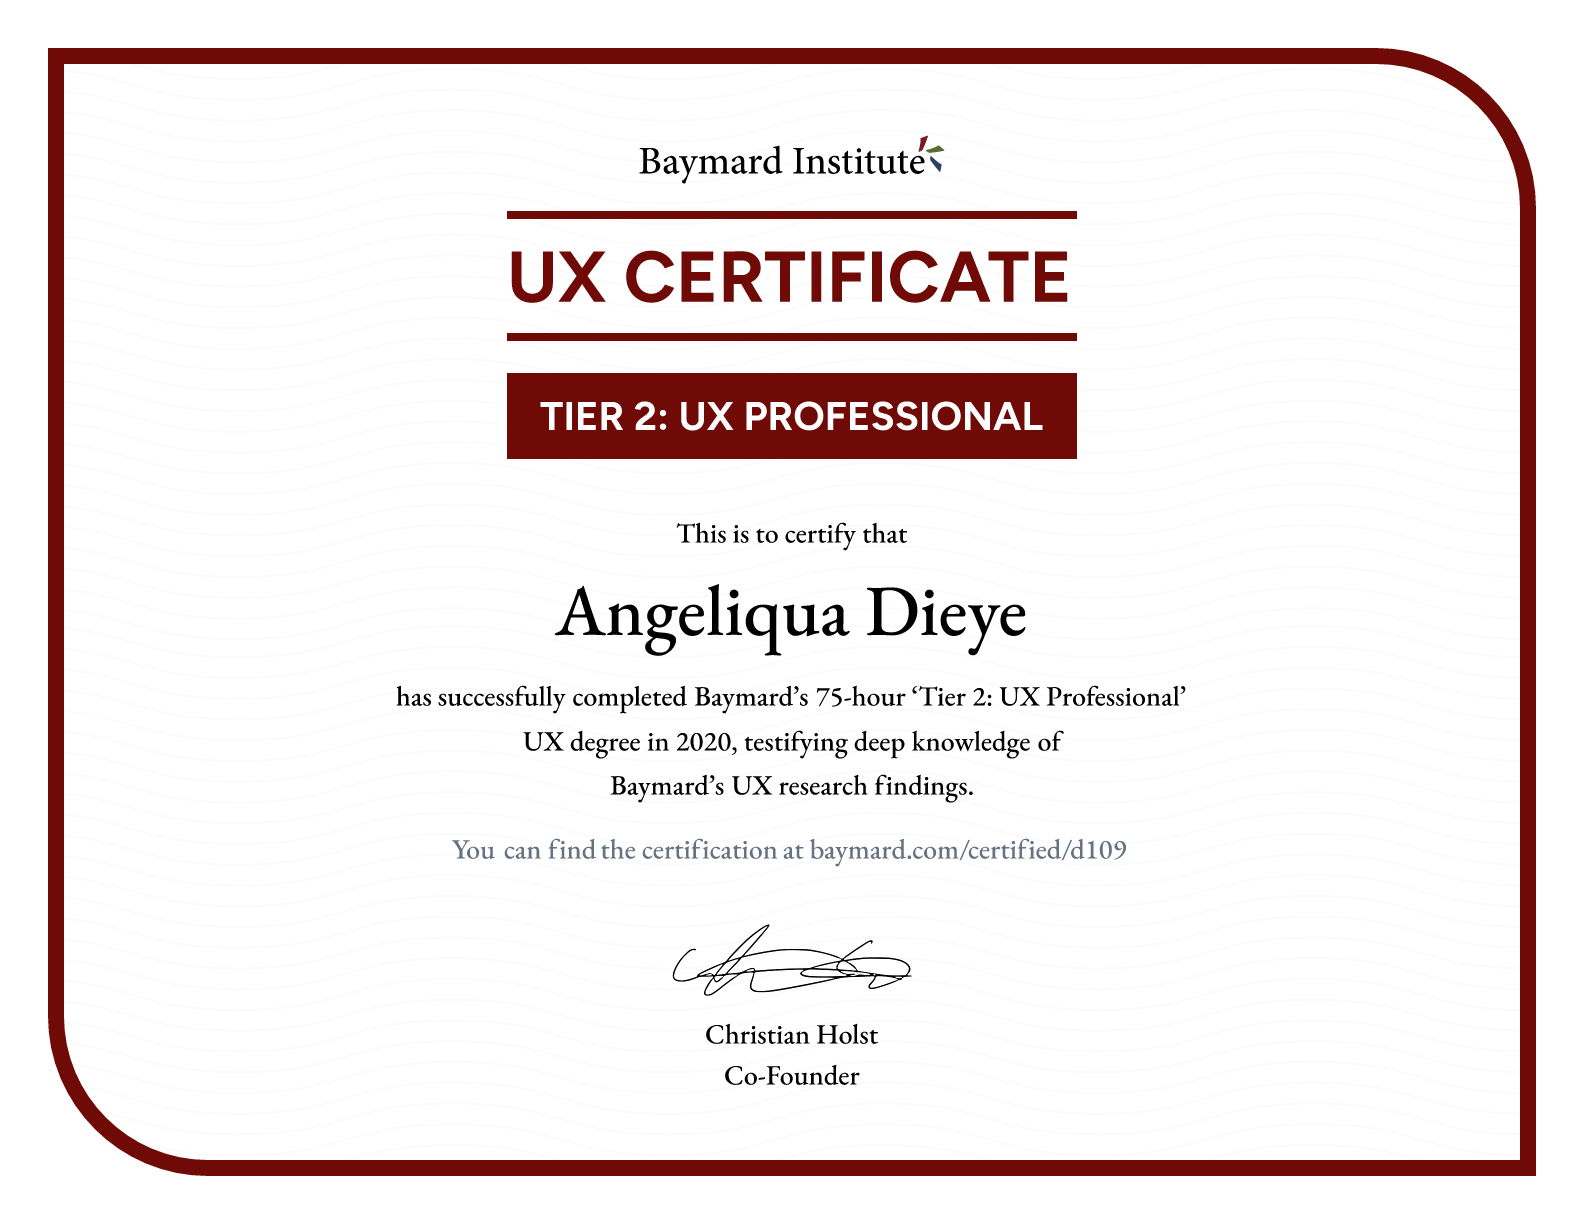 Angeliqua Dieye’s certificate